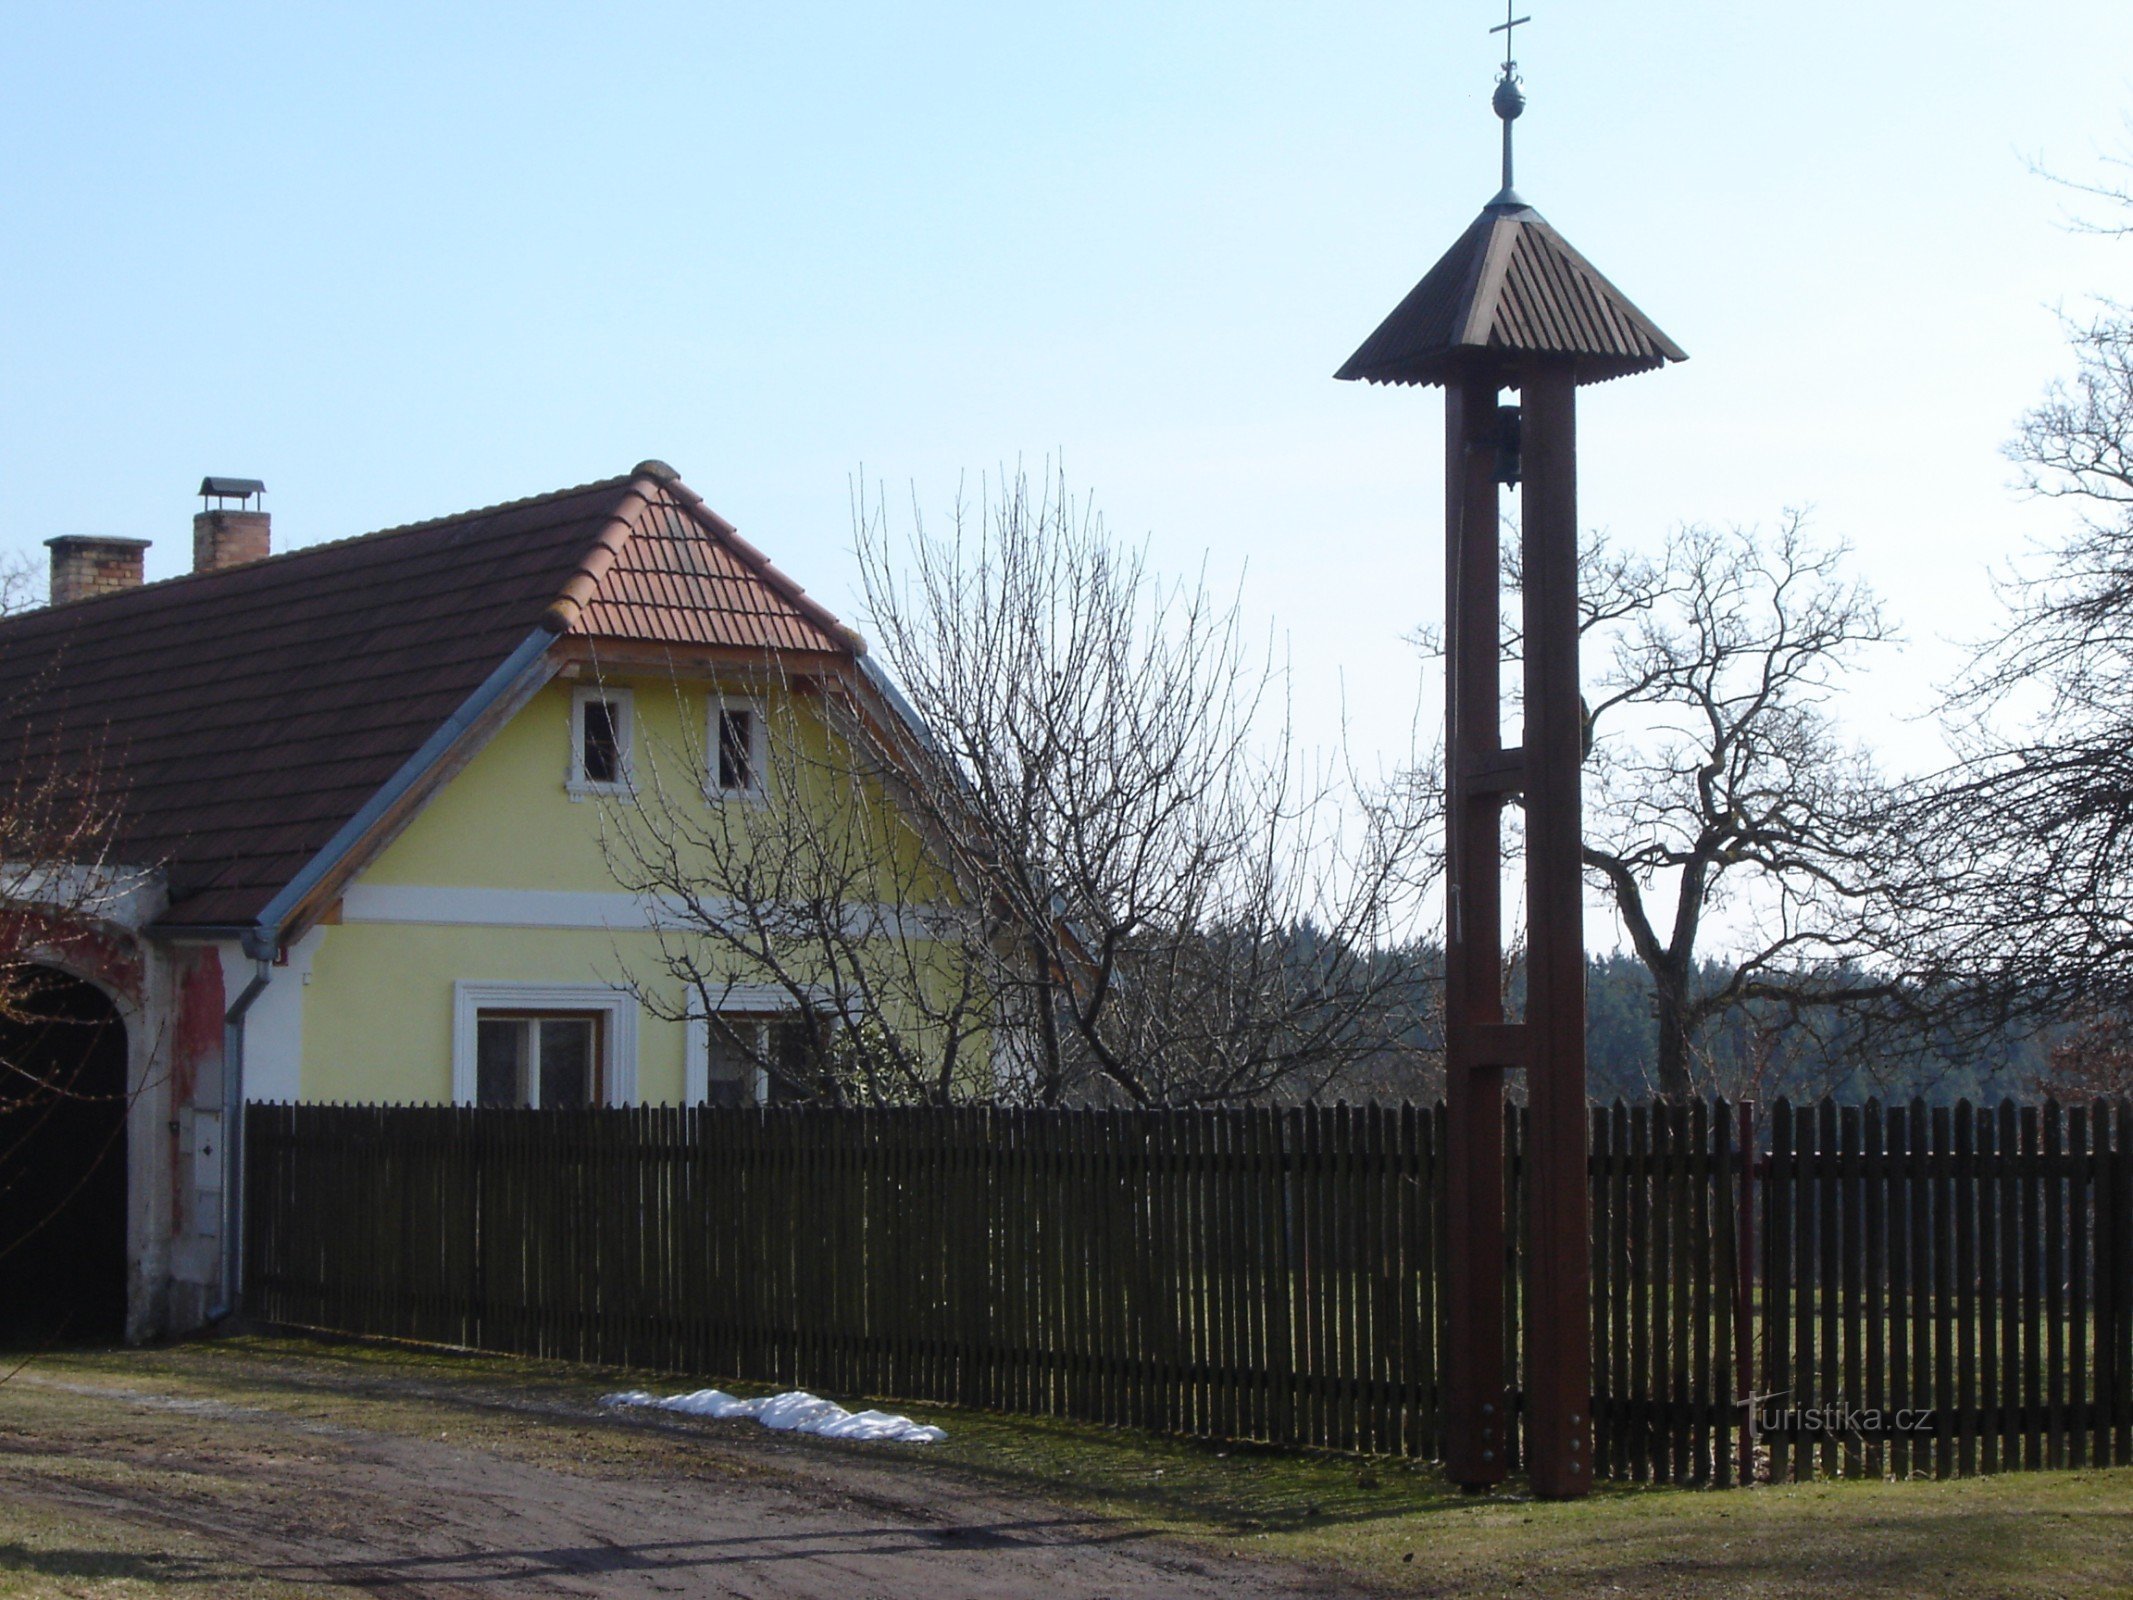 Khu định cư Větrov với tháp chuông